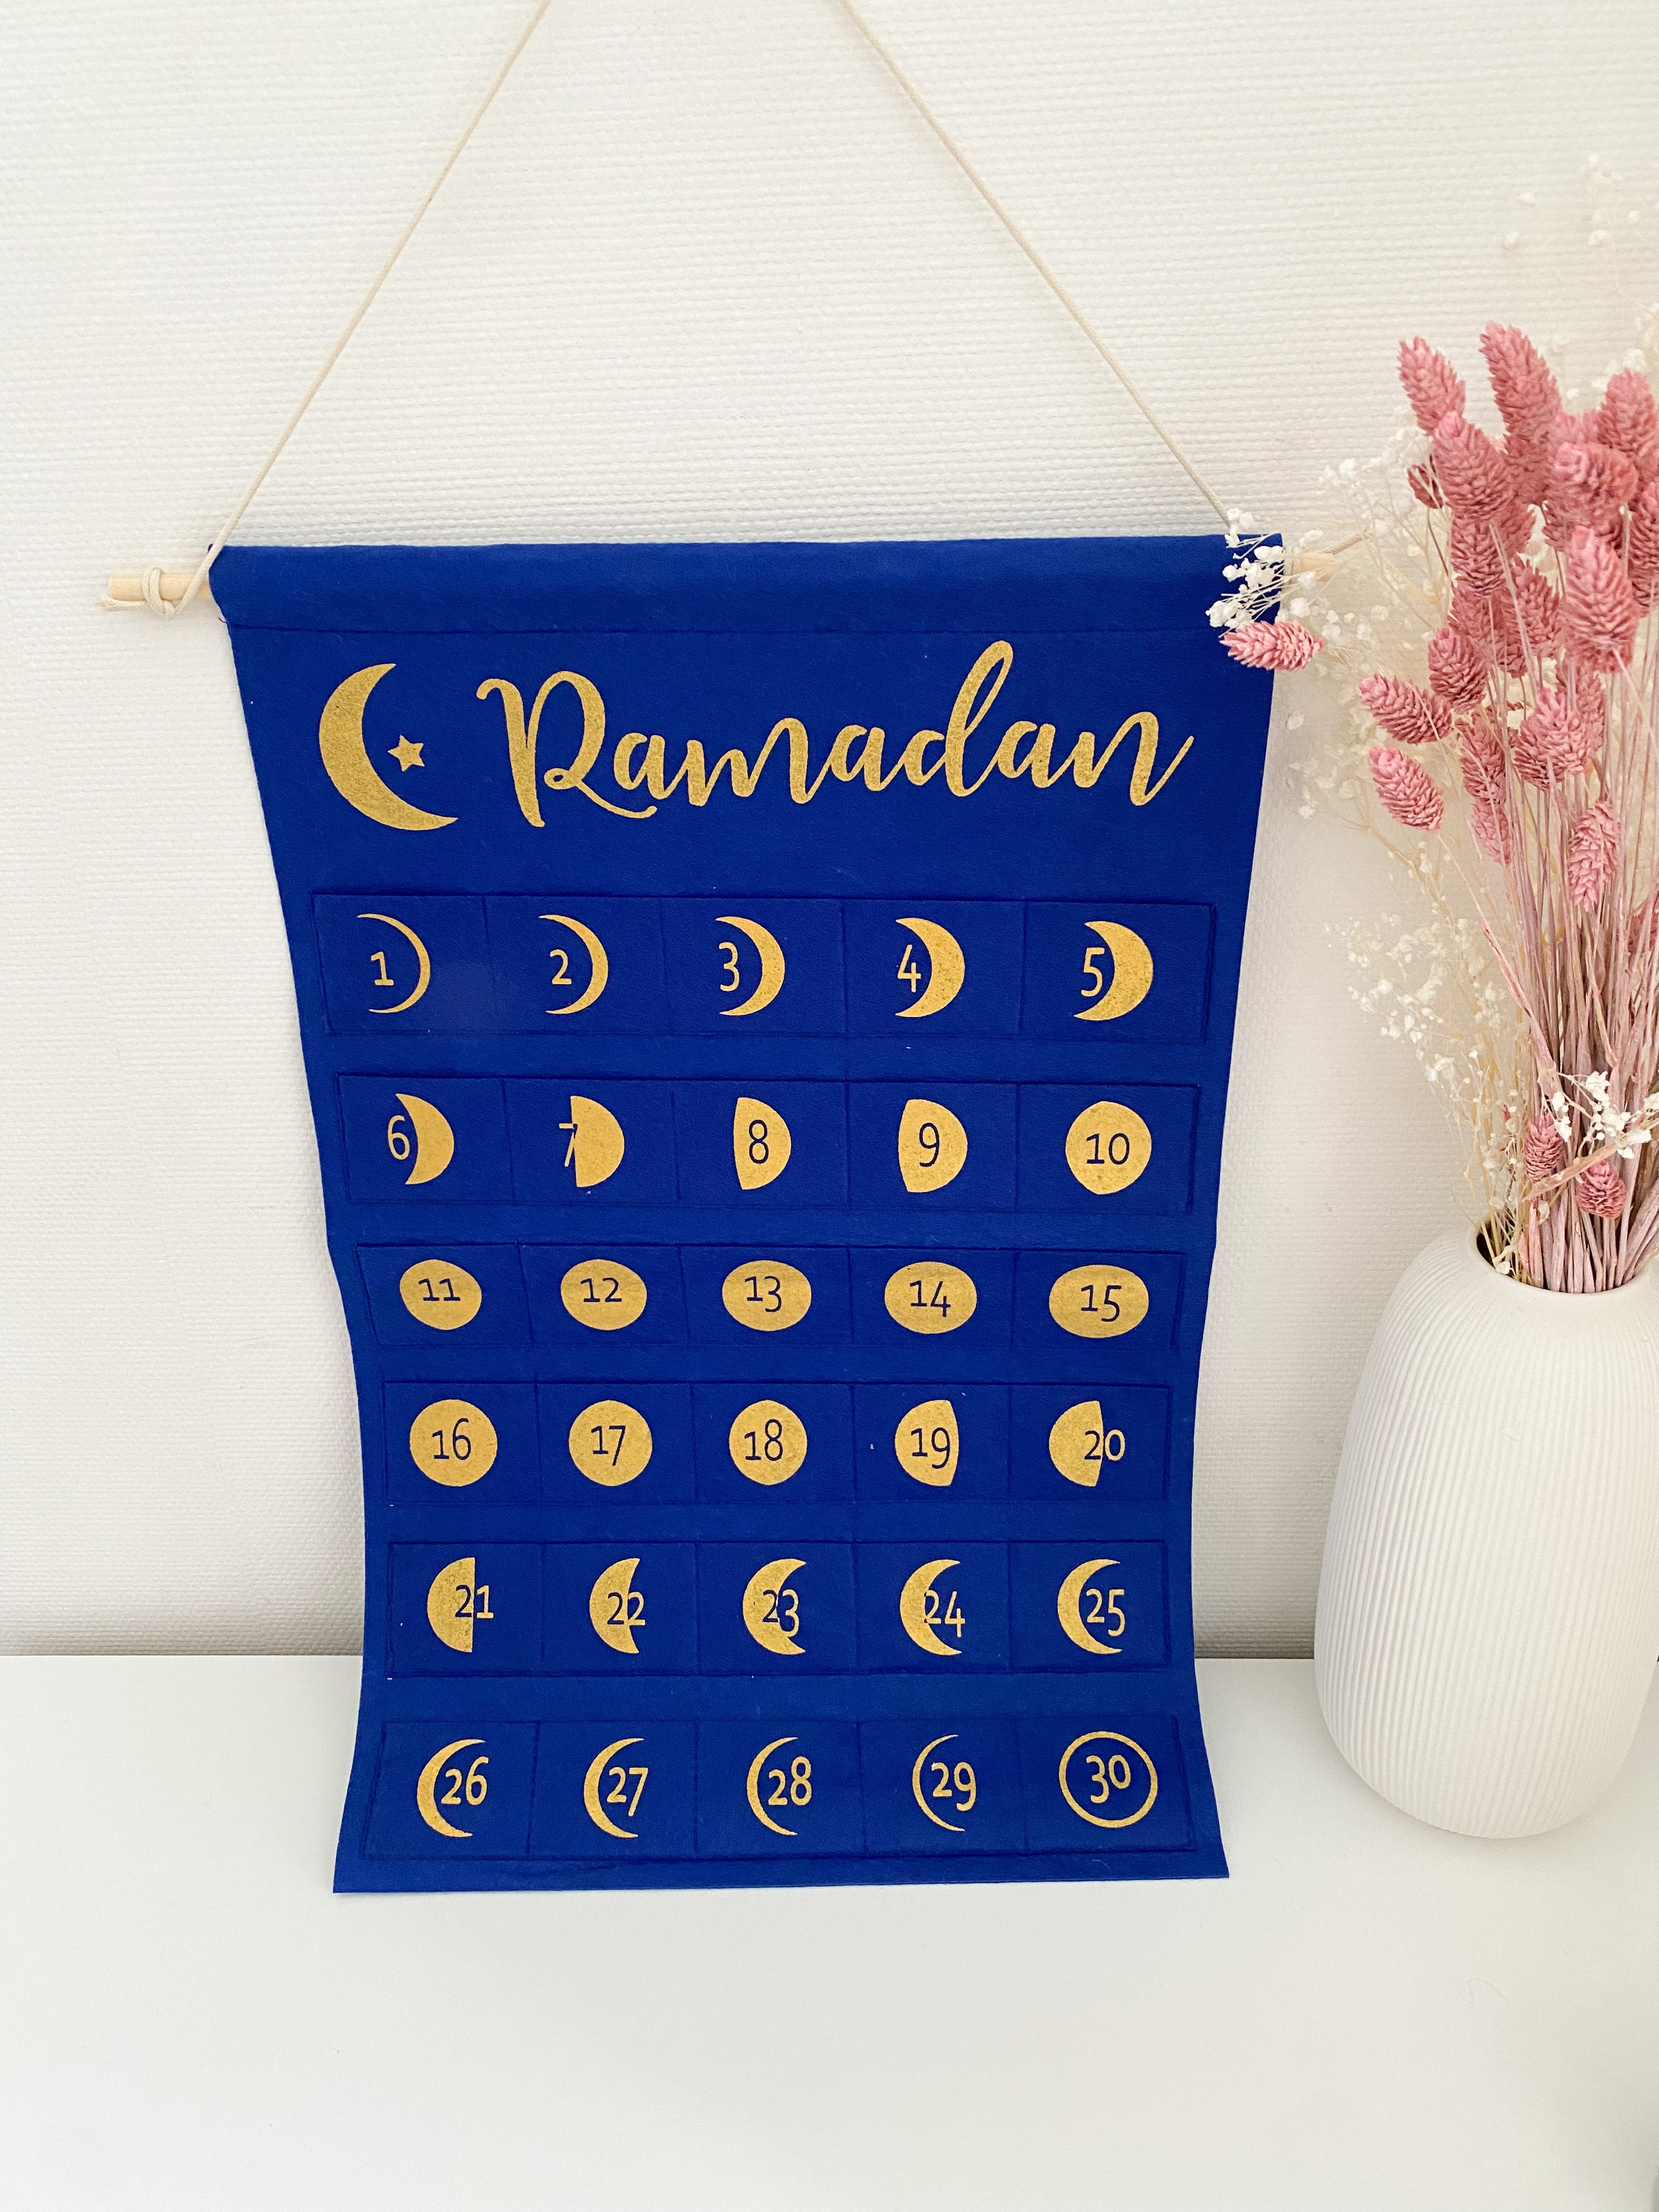 Faire une conception de calendrier de l'avent pour le ramadan